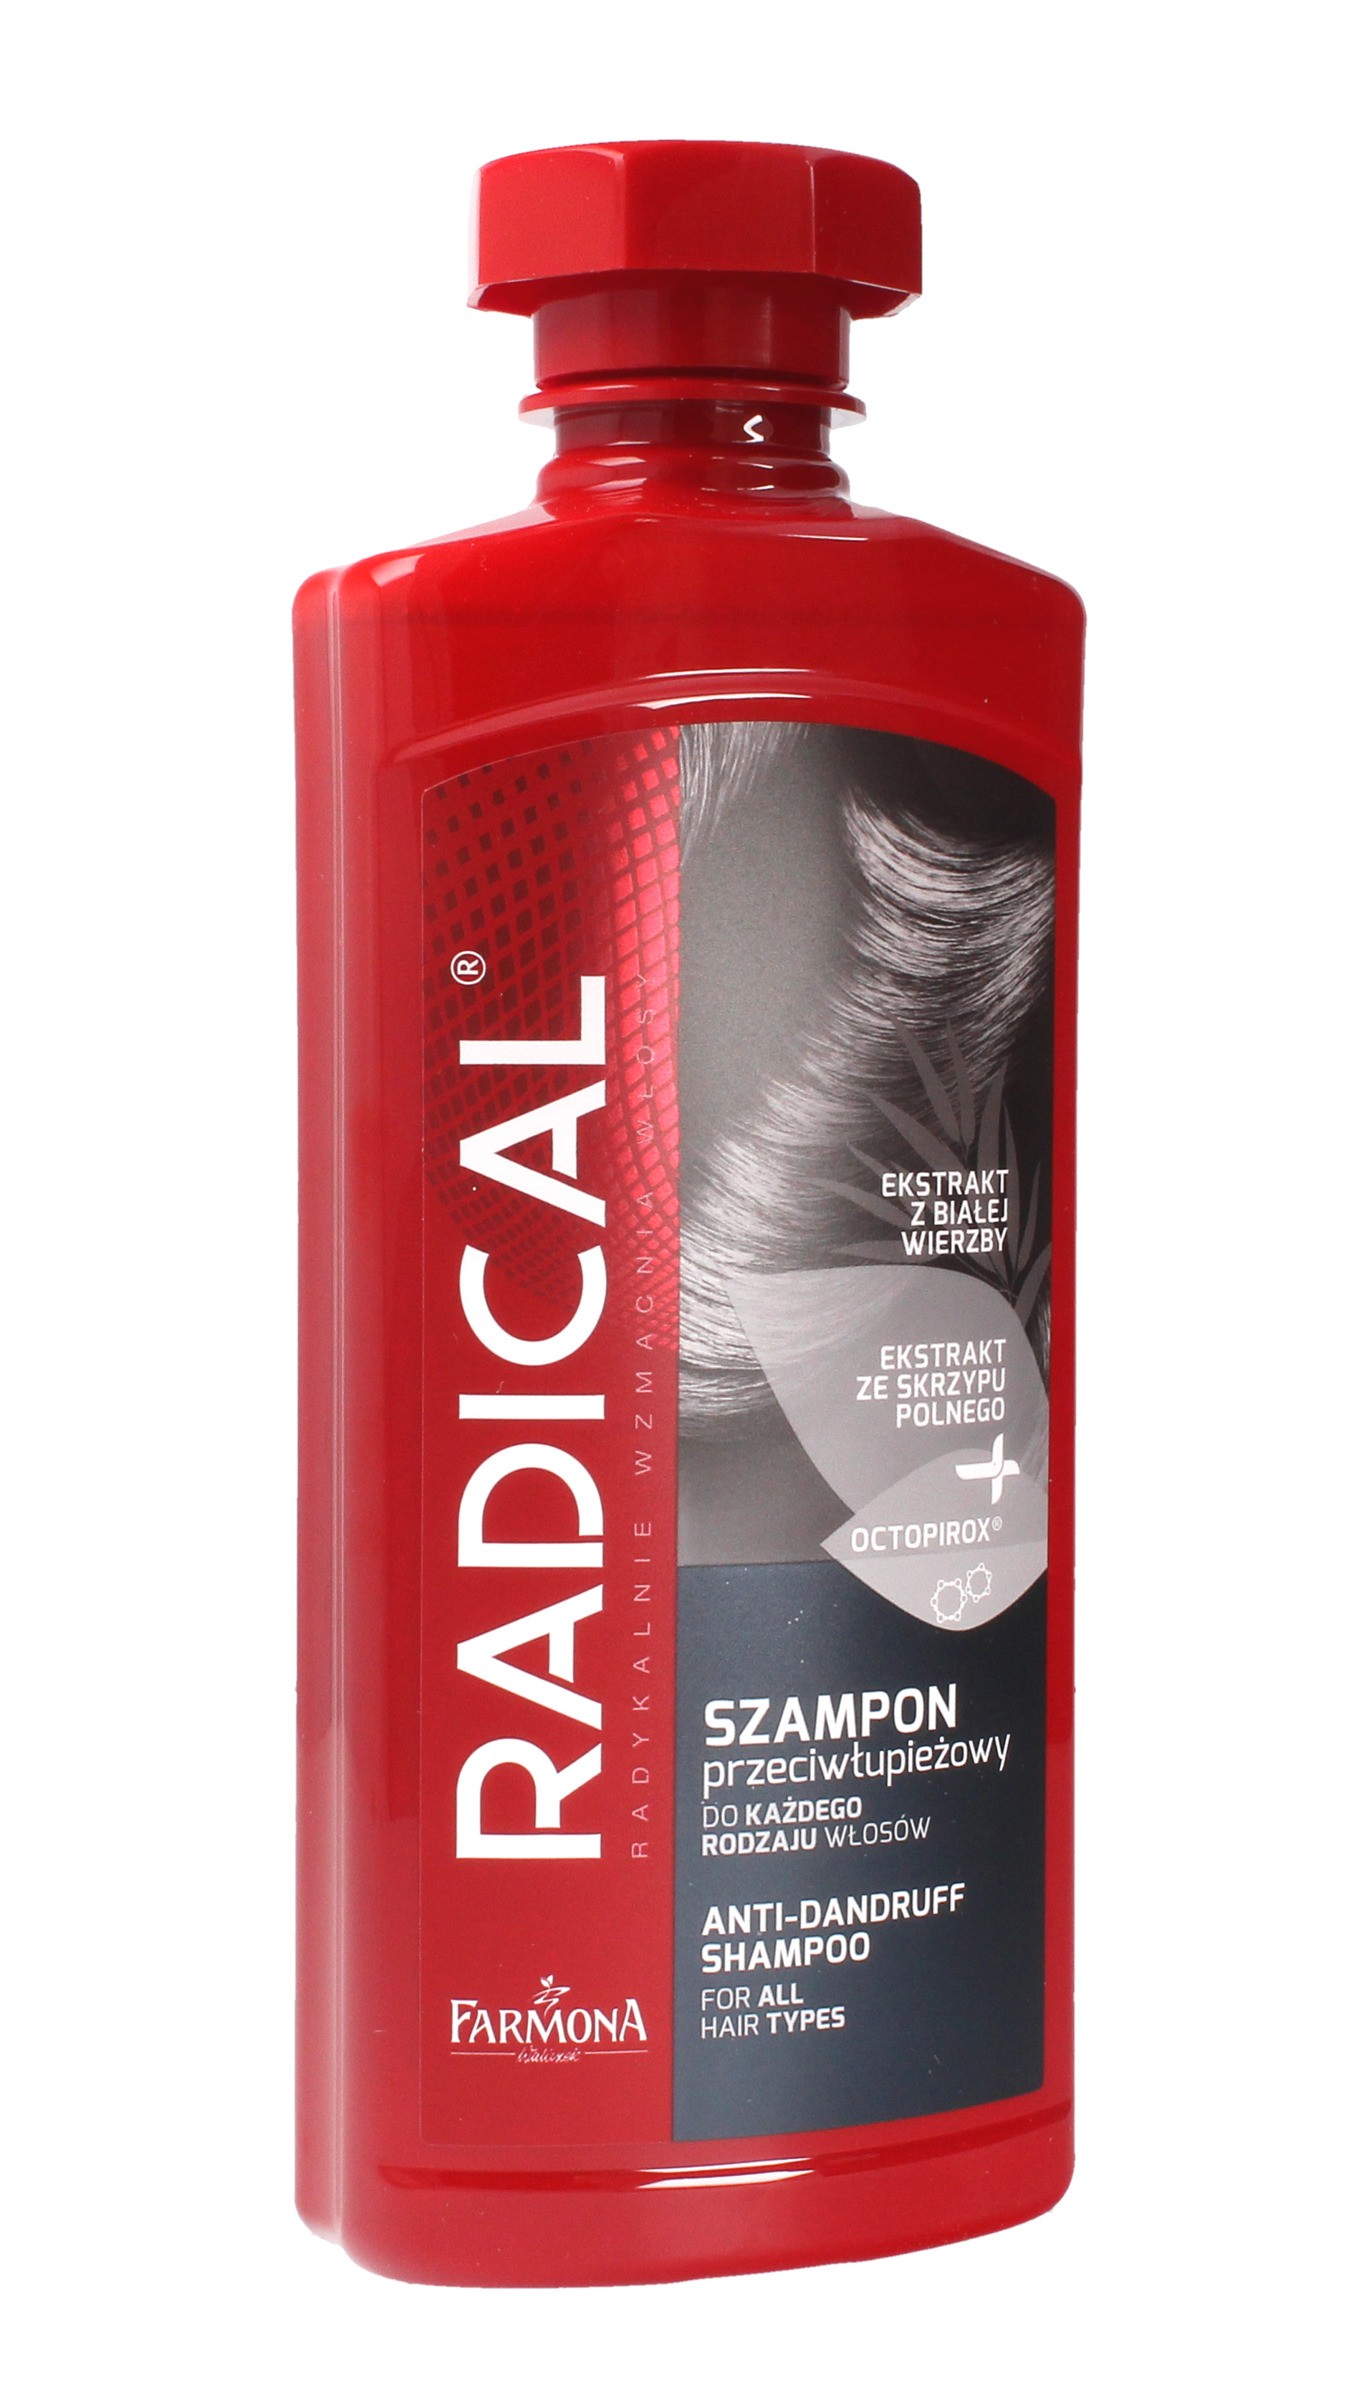 radical szampon przeciwłupieżowy